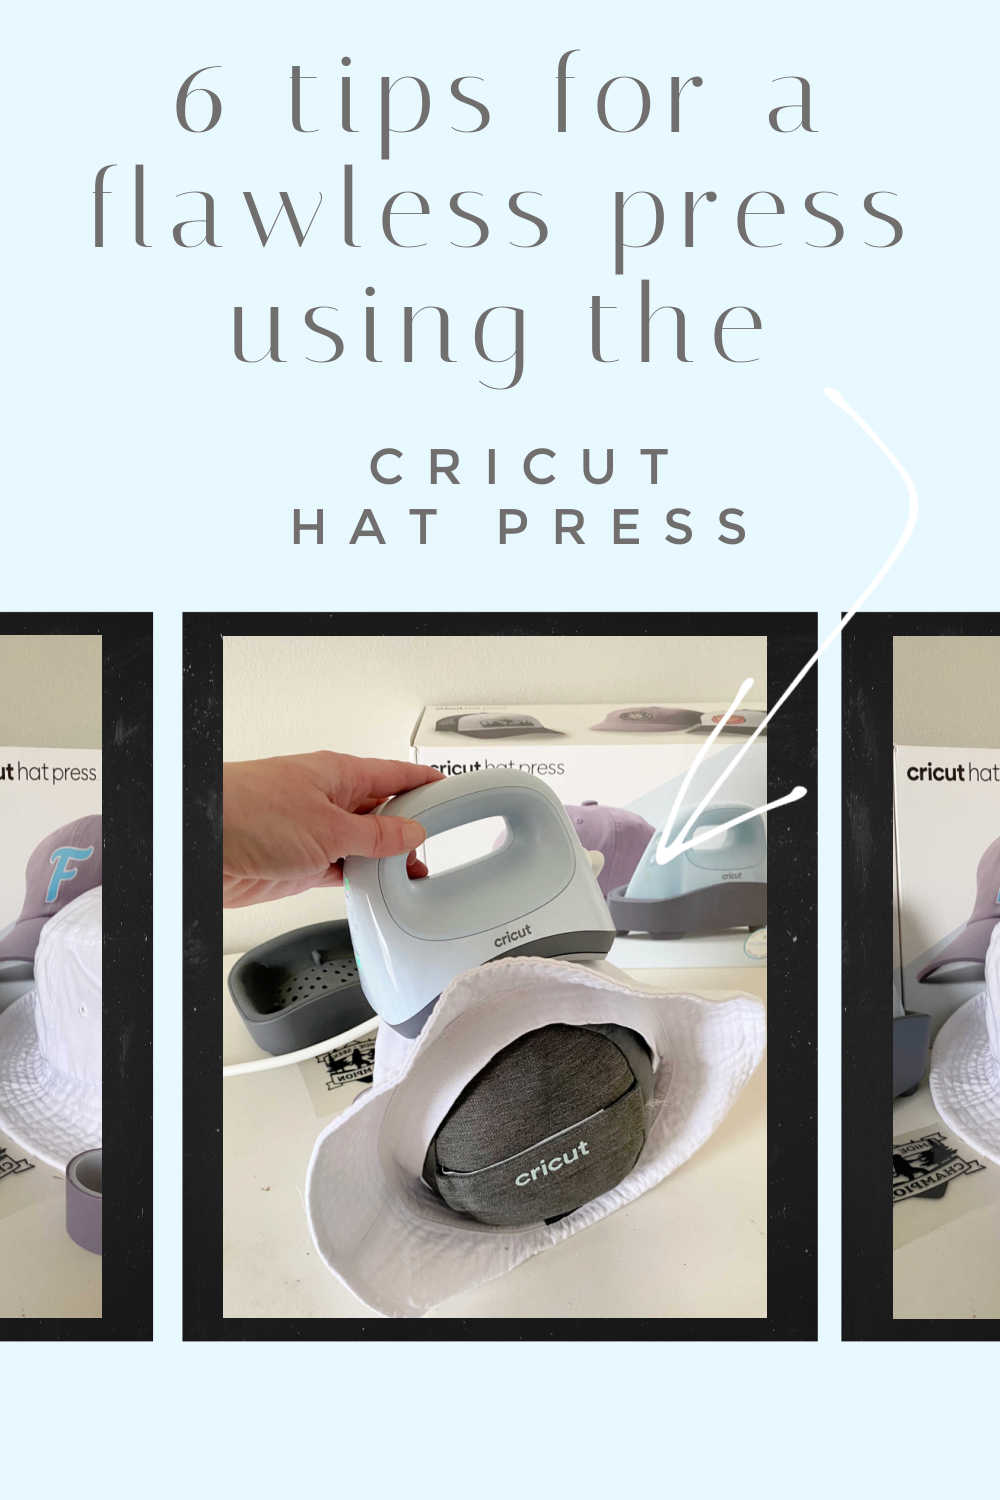 cricut hat press tips